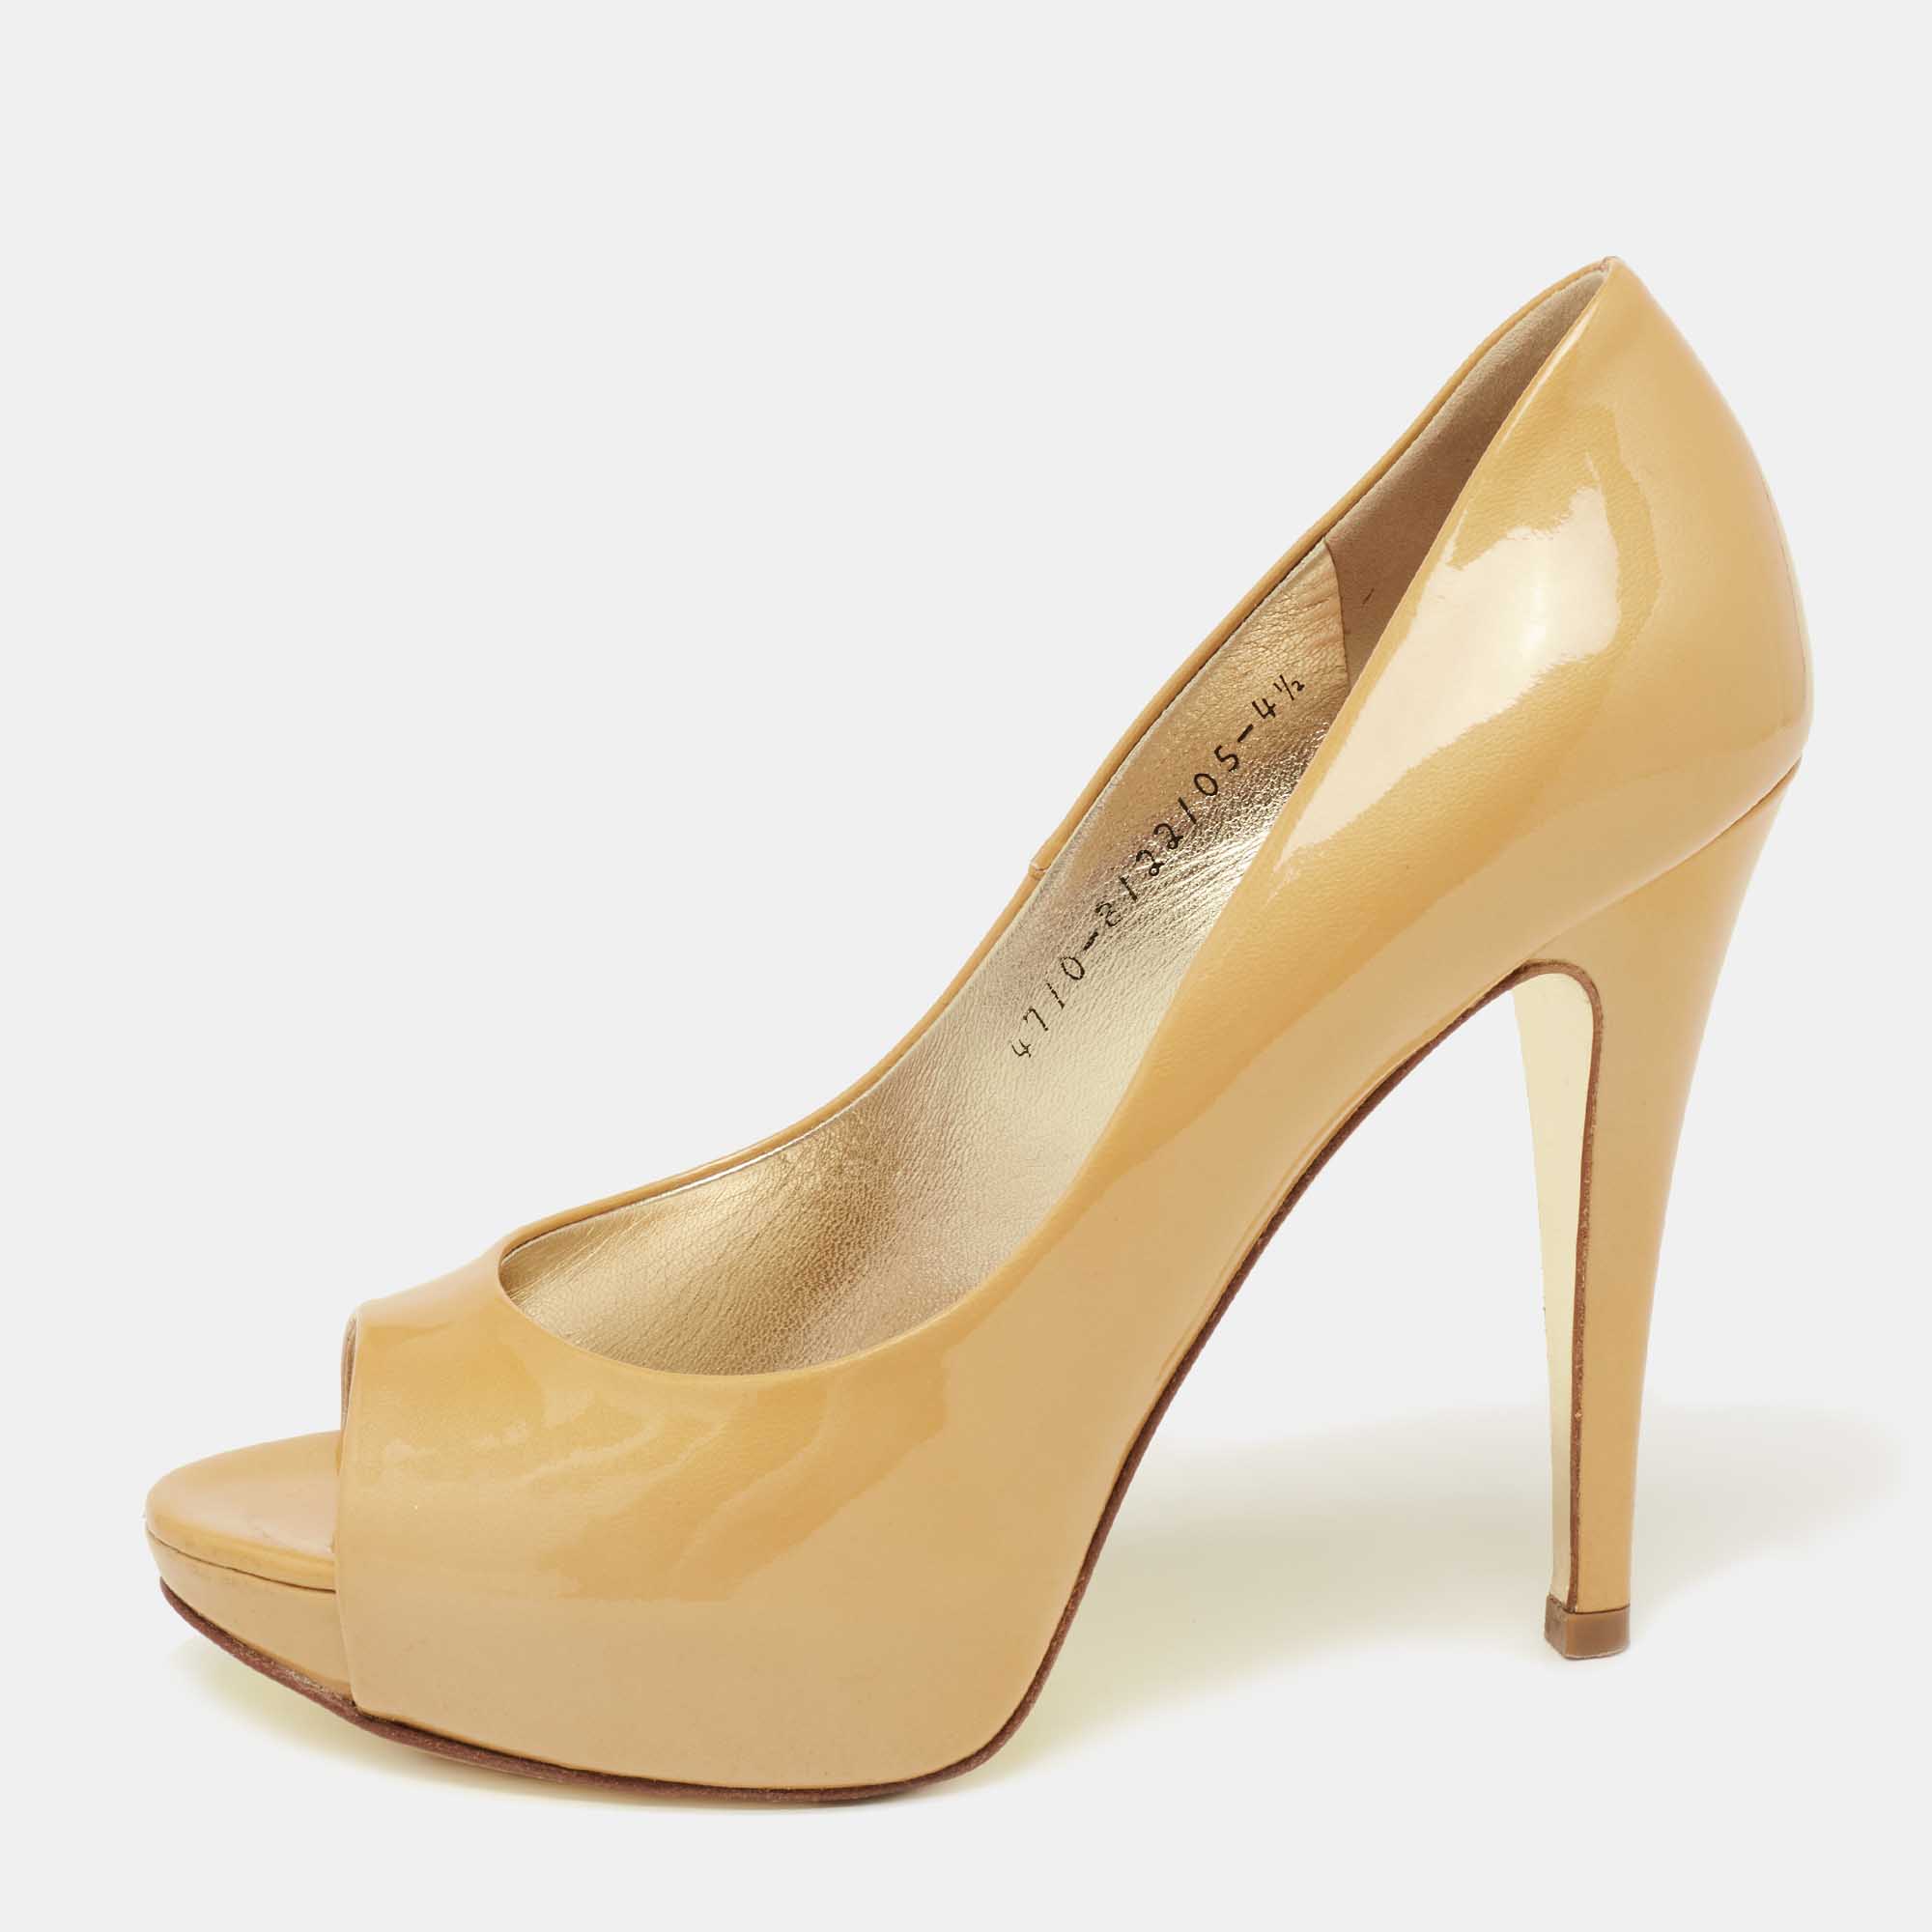 Gina mustard yellow patent leather peep-toe pumps size 37.5